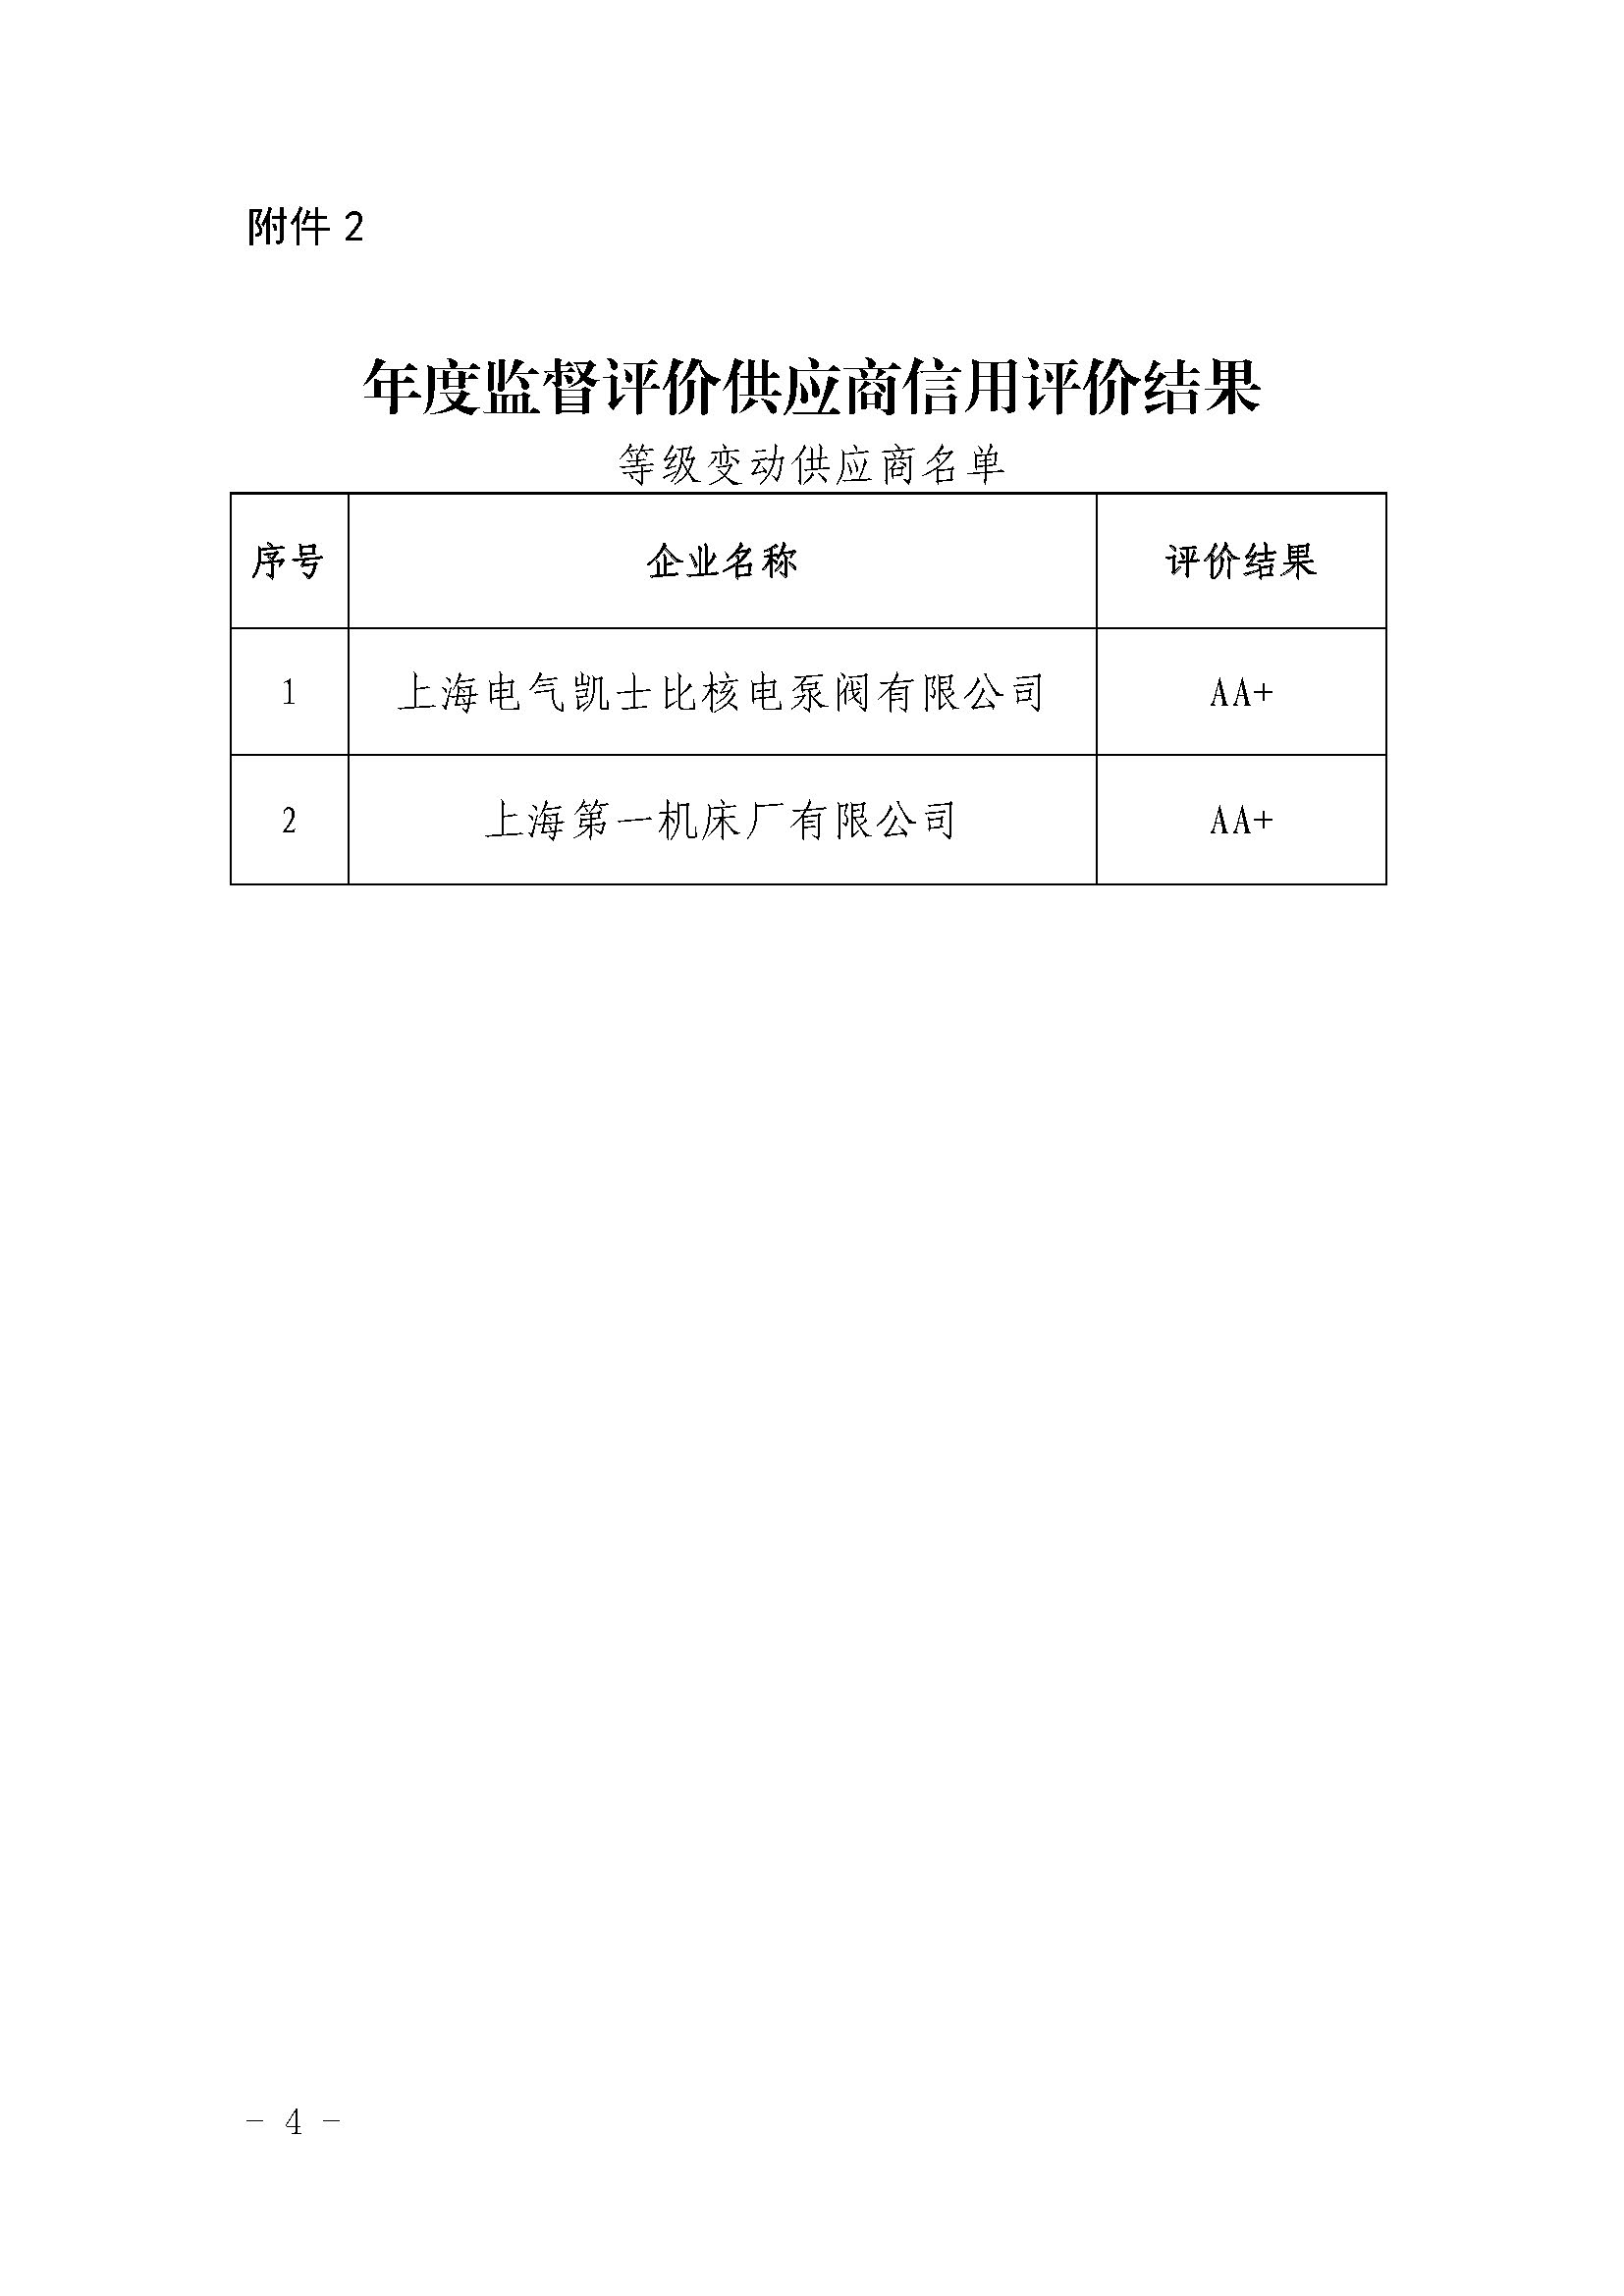 关于中国核能行业协会第九批核能行业供应商信用评价结果及年度监督评价结果的公示_页面_4.jpg